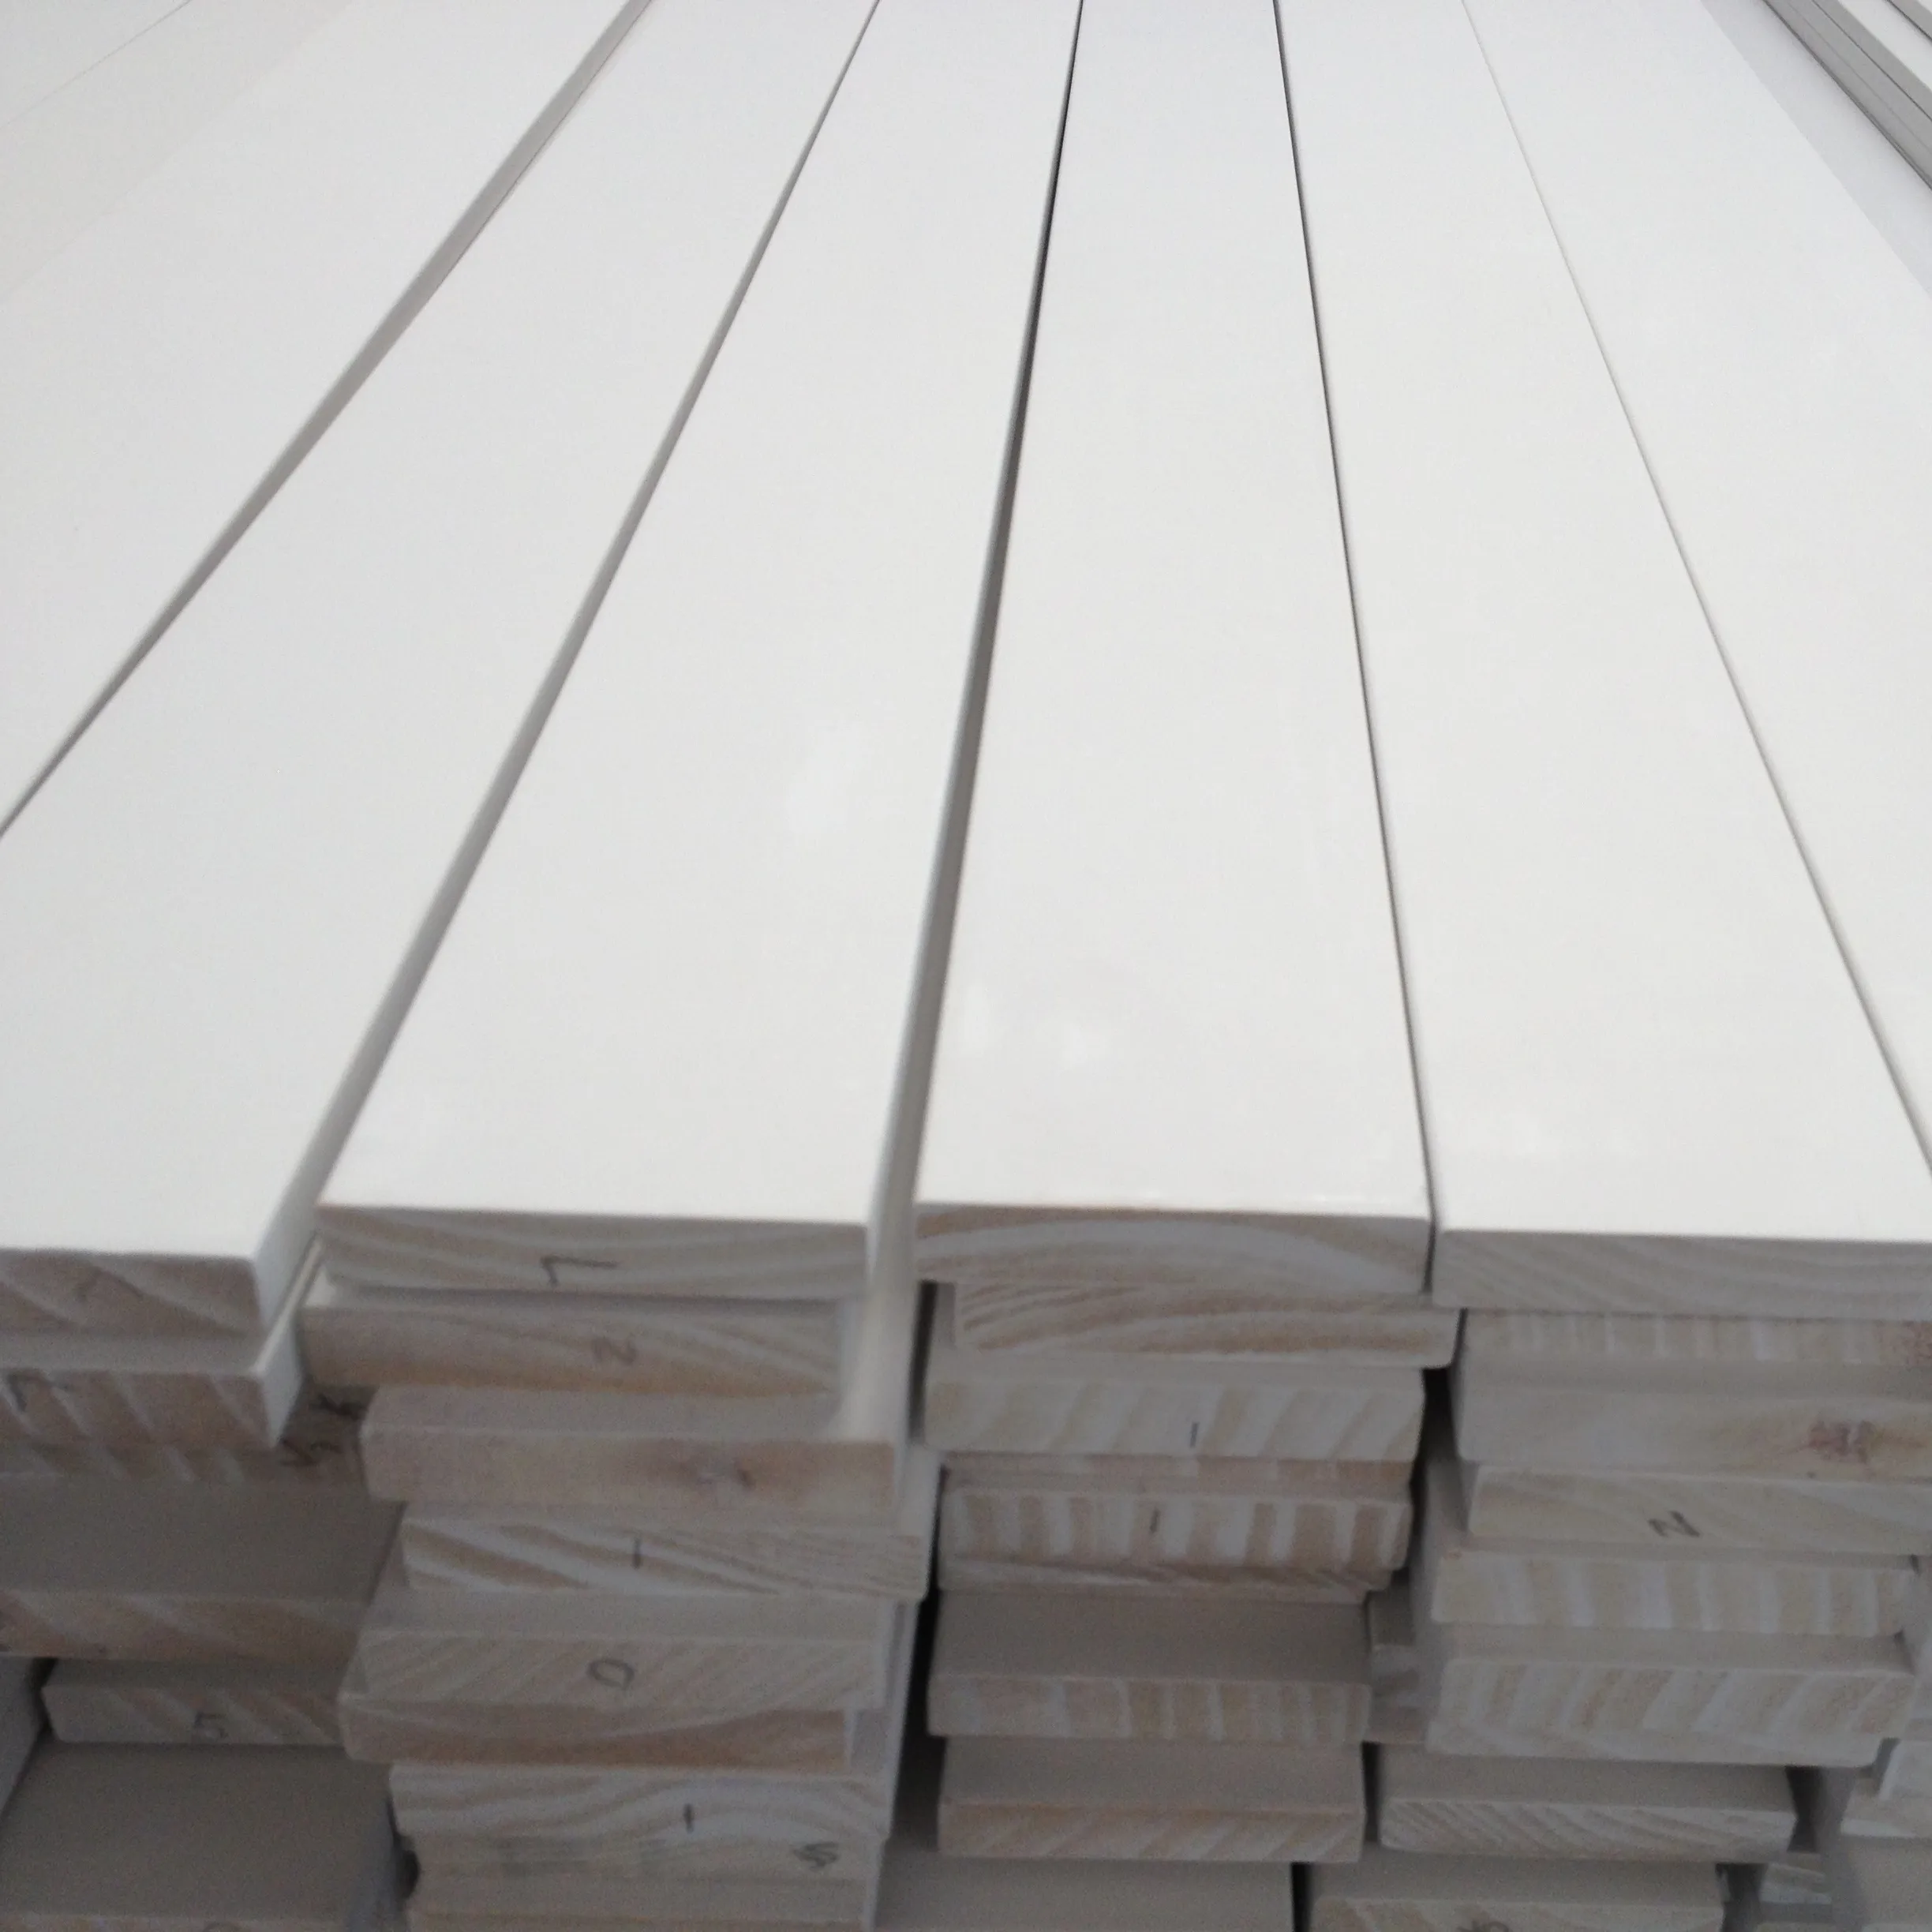 White Primed FJ Pine Window Reveal Trim Board Moulding